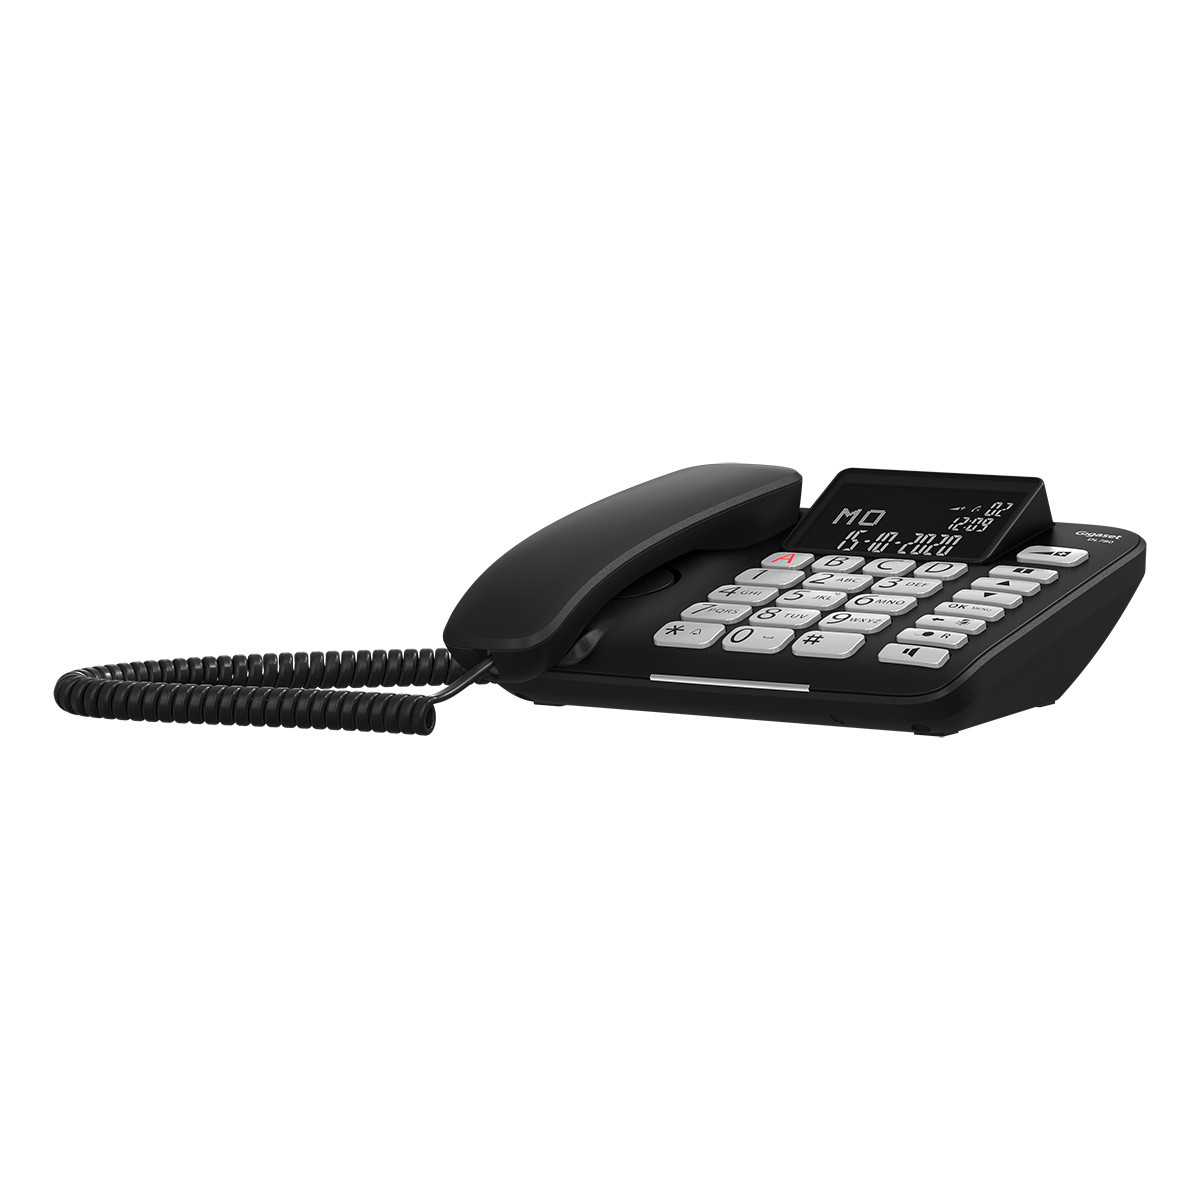 Gigaset S30350-H220-R701 - Teléfono fijo e inalámbrico DL780+